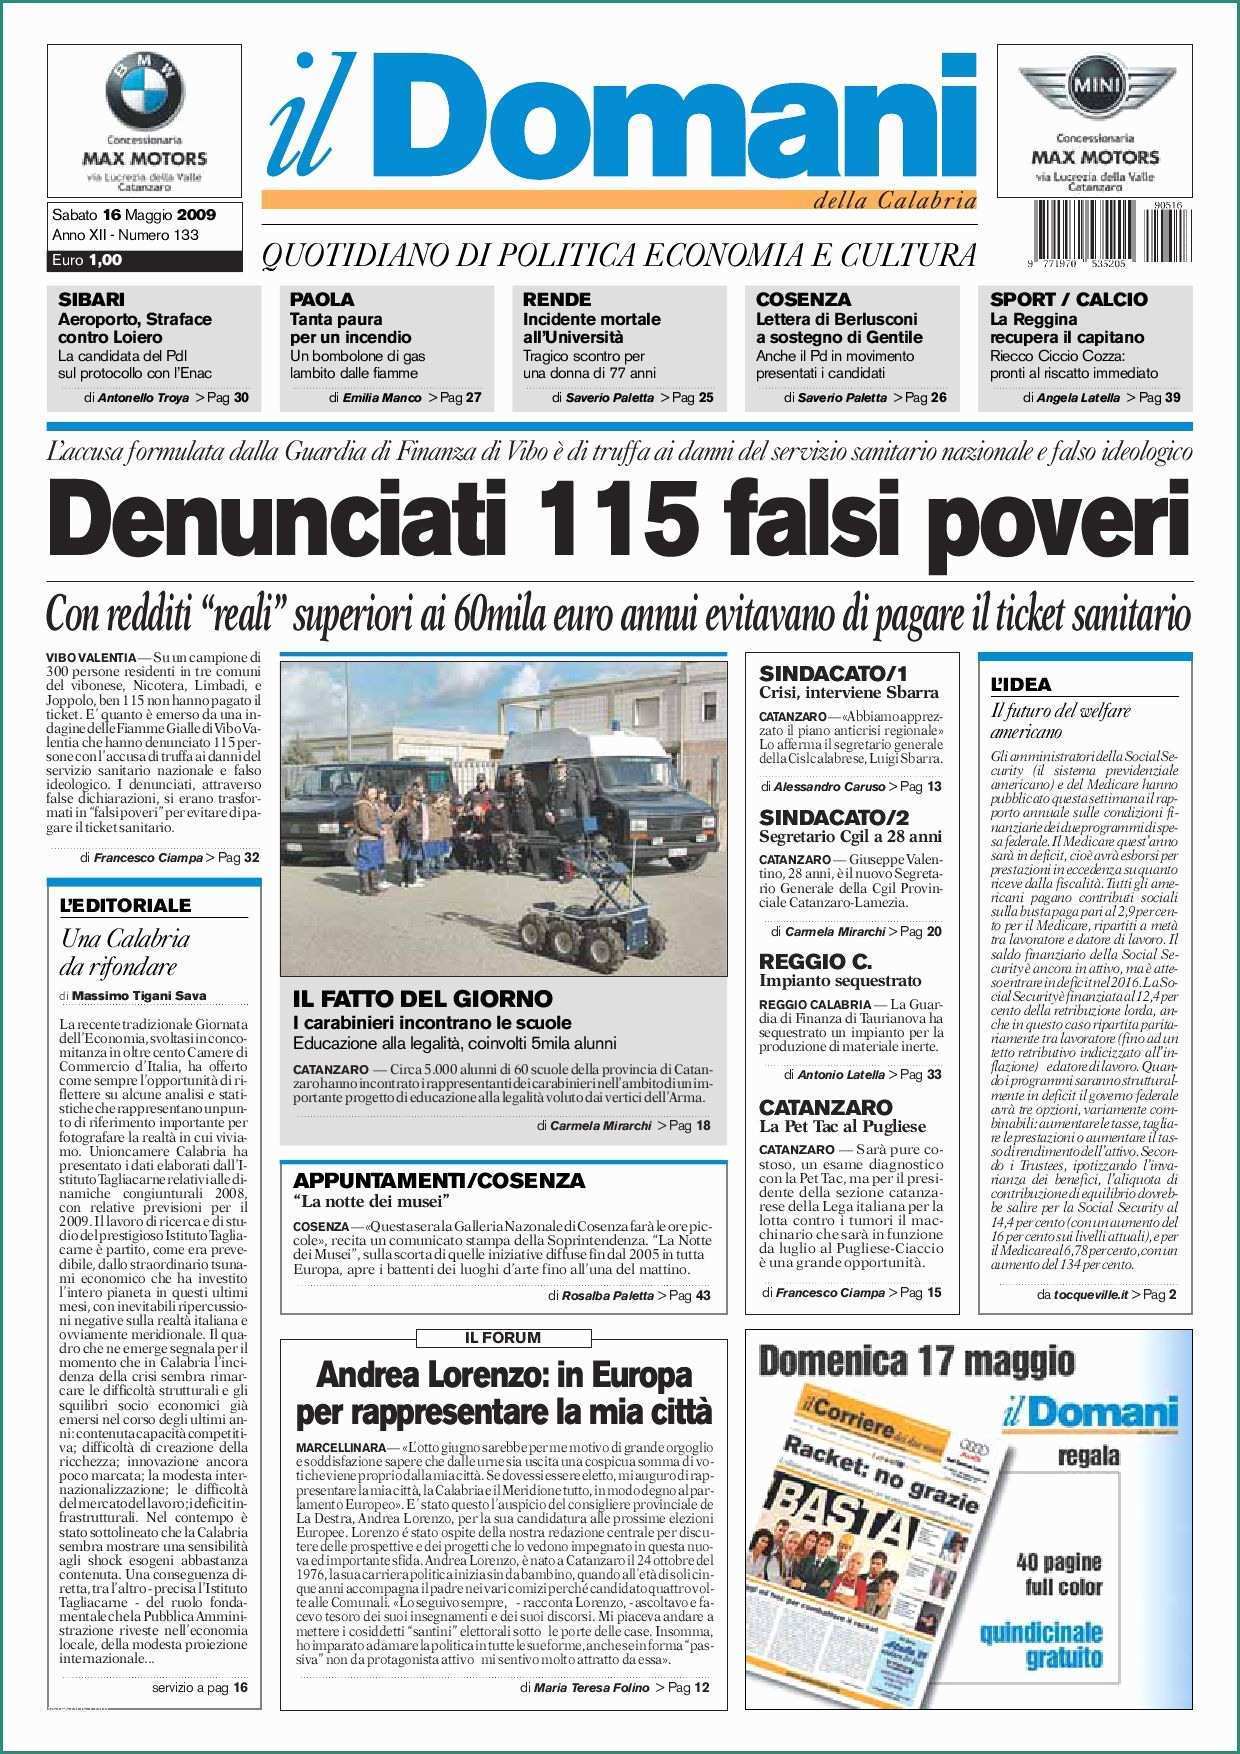 Residuo Fisso Acqua Blues E Ildomani by T&p Editori Il Domani issuu